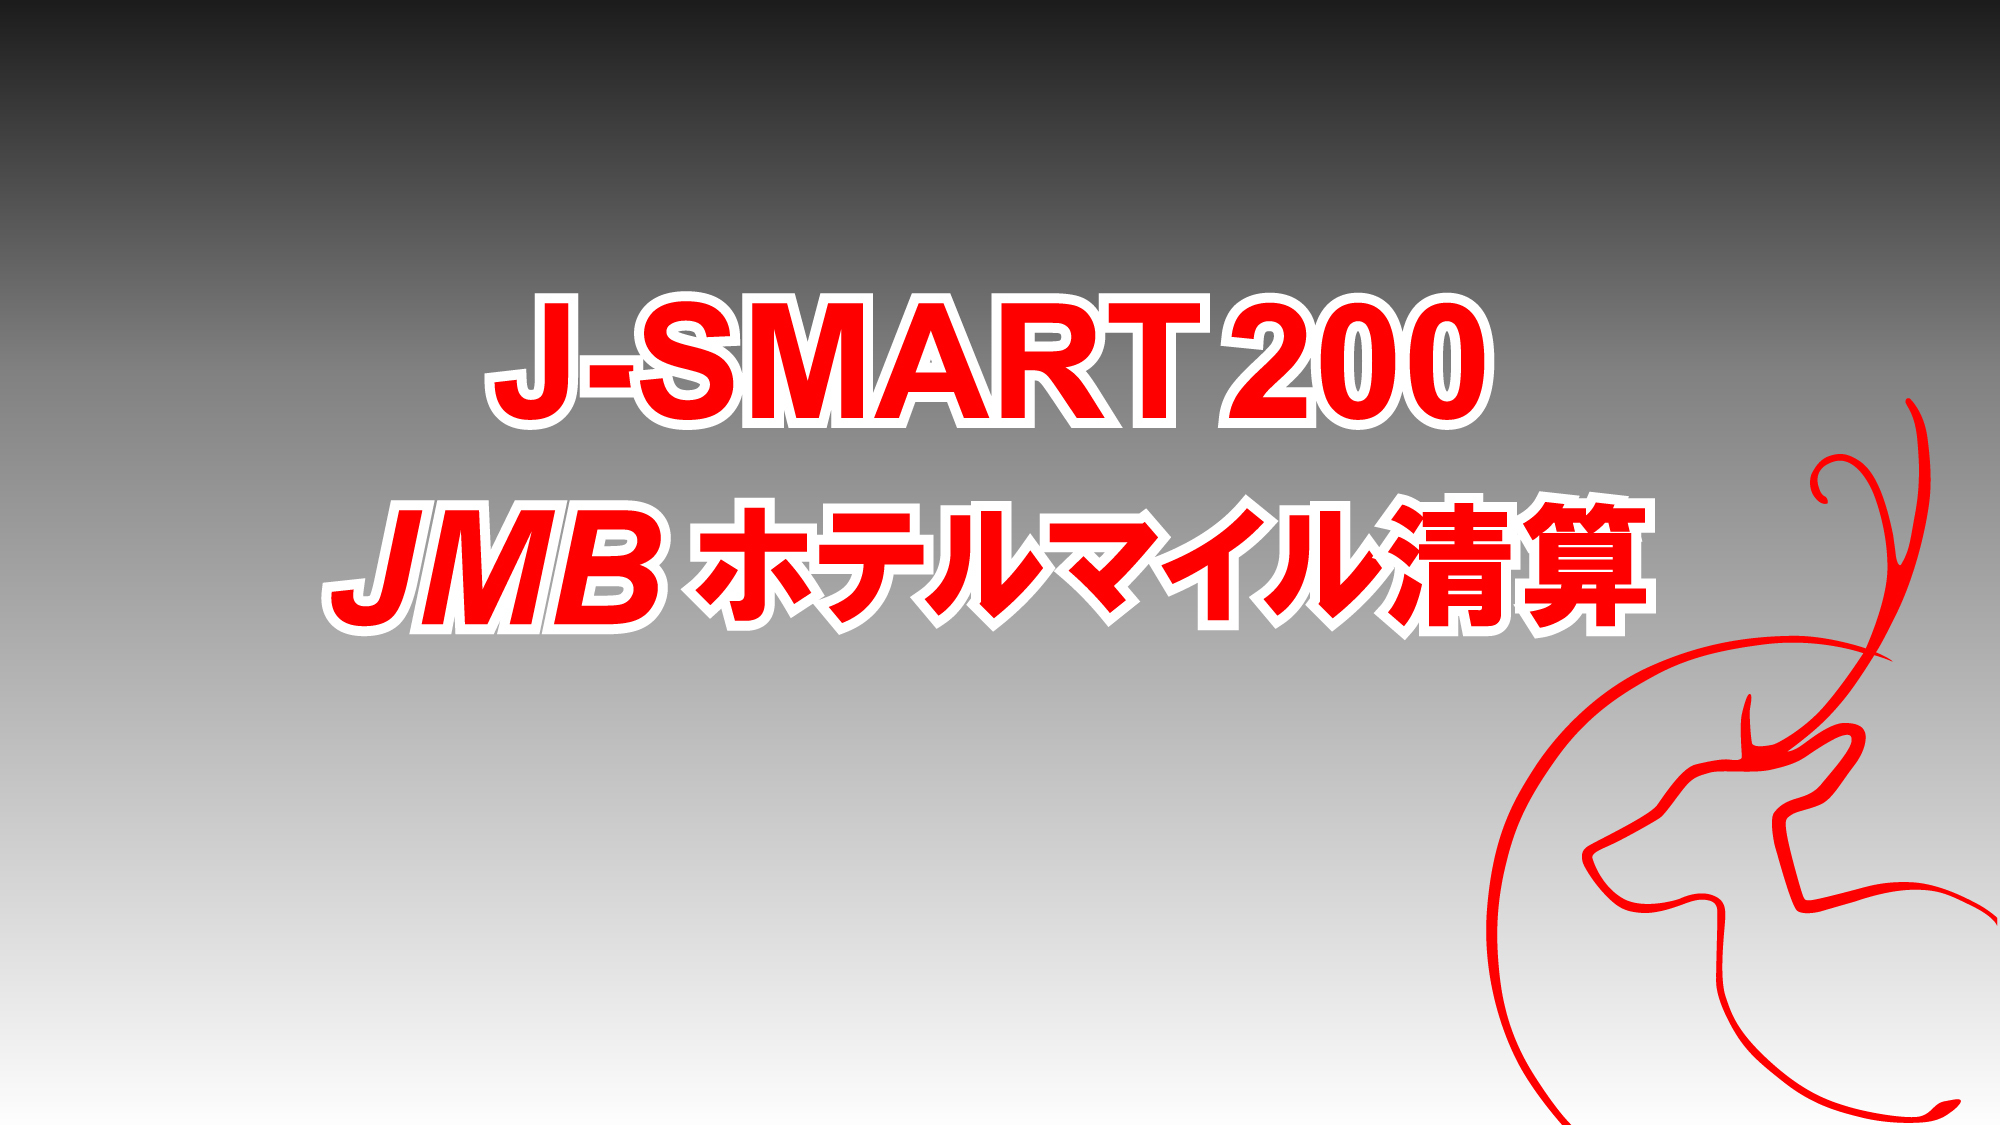 【J-SMART200】JMB200マイル付／食事なし